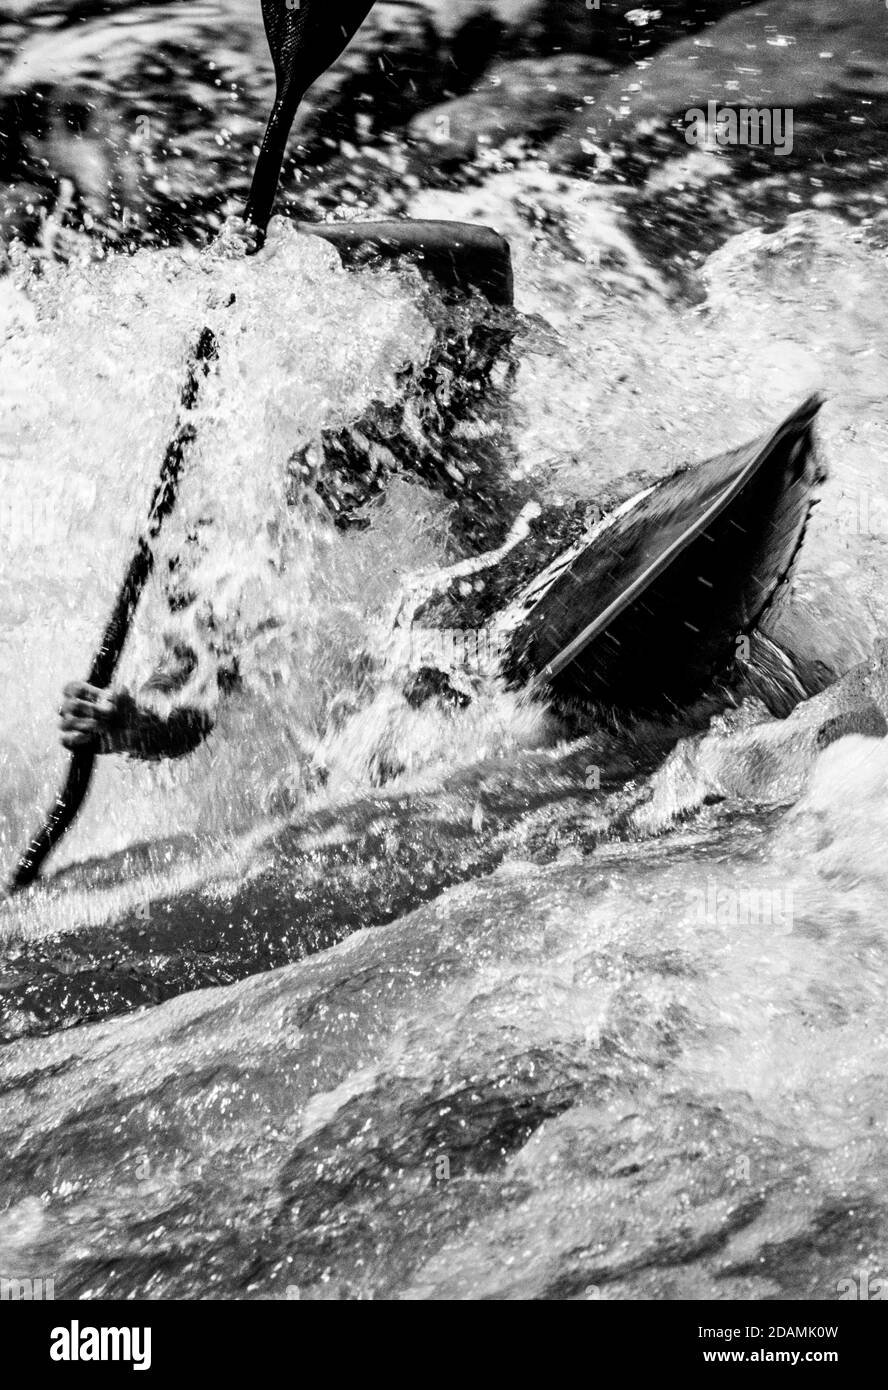 Kayaking through whitewater rapids. Stock Photo